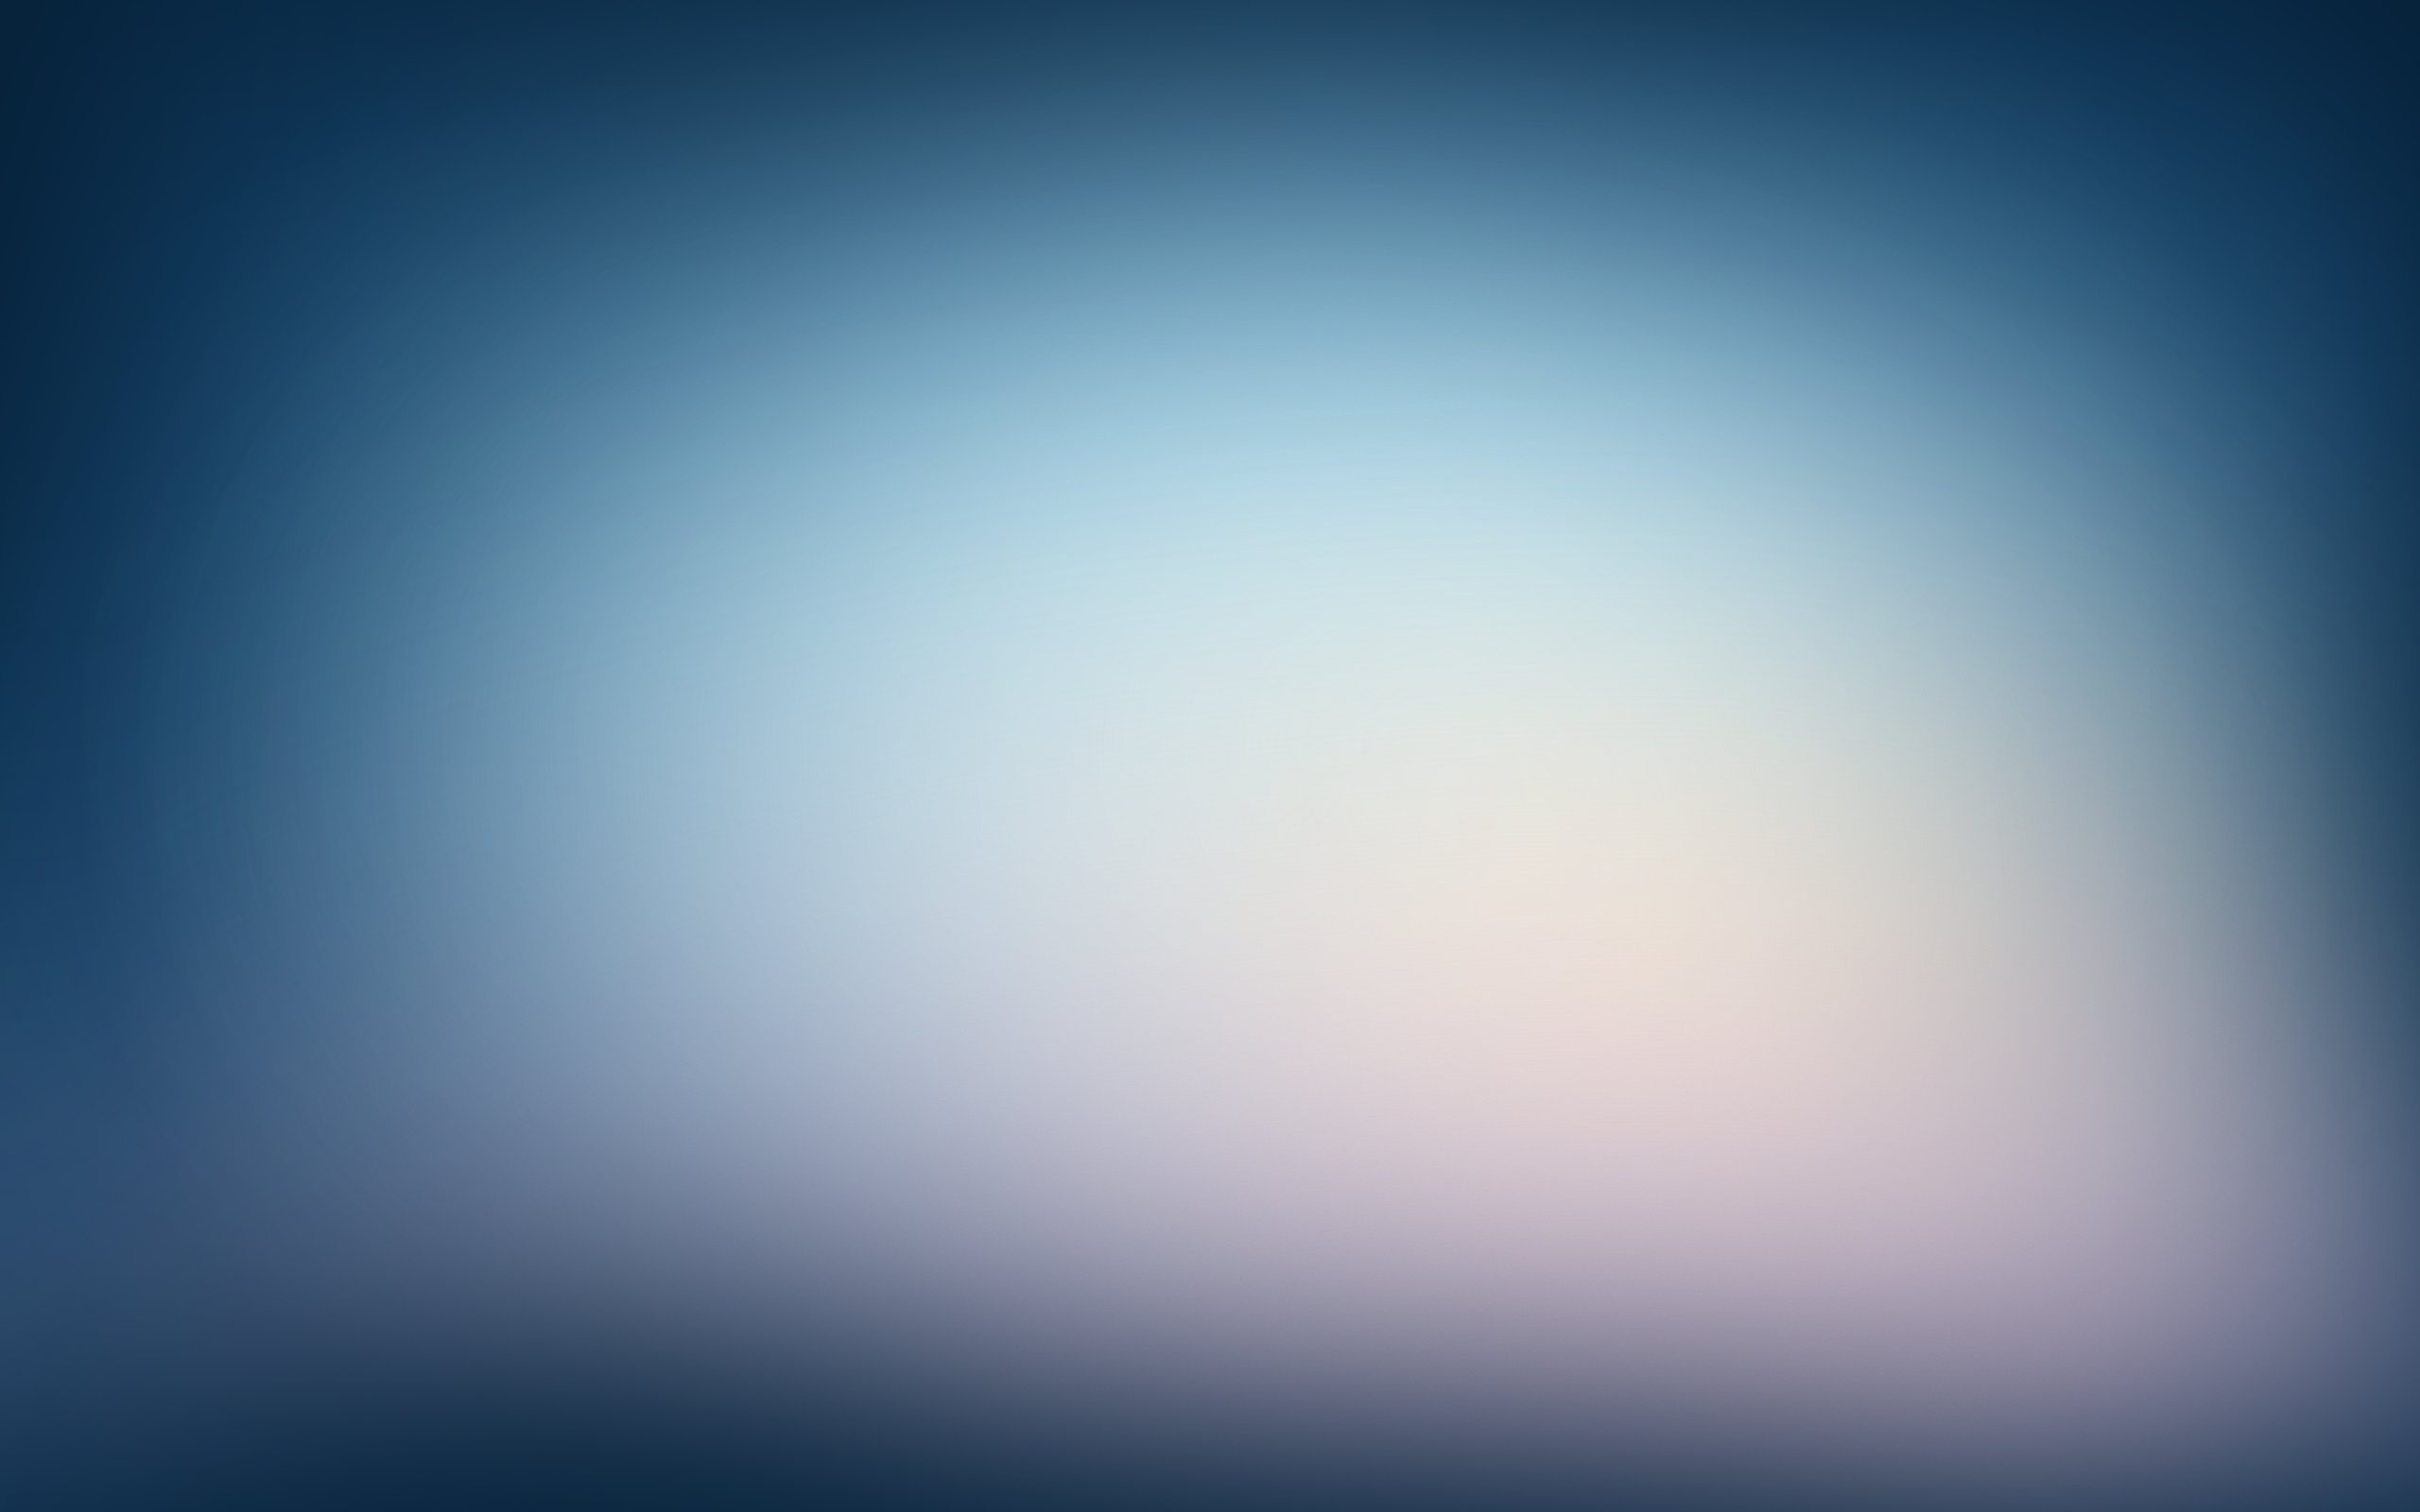 Light Blue Wallpaper Backgrounds | PixelsTalk.Net - 2560 x 1600 jpeg 211kB